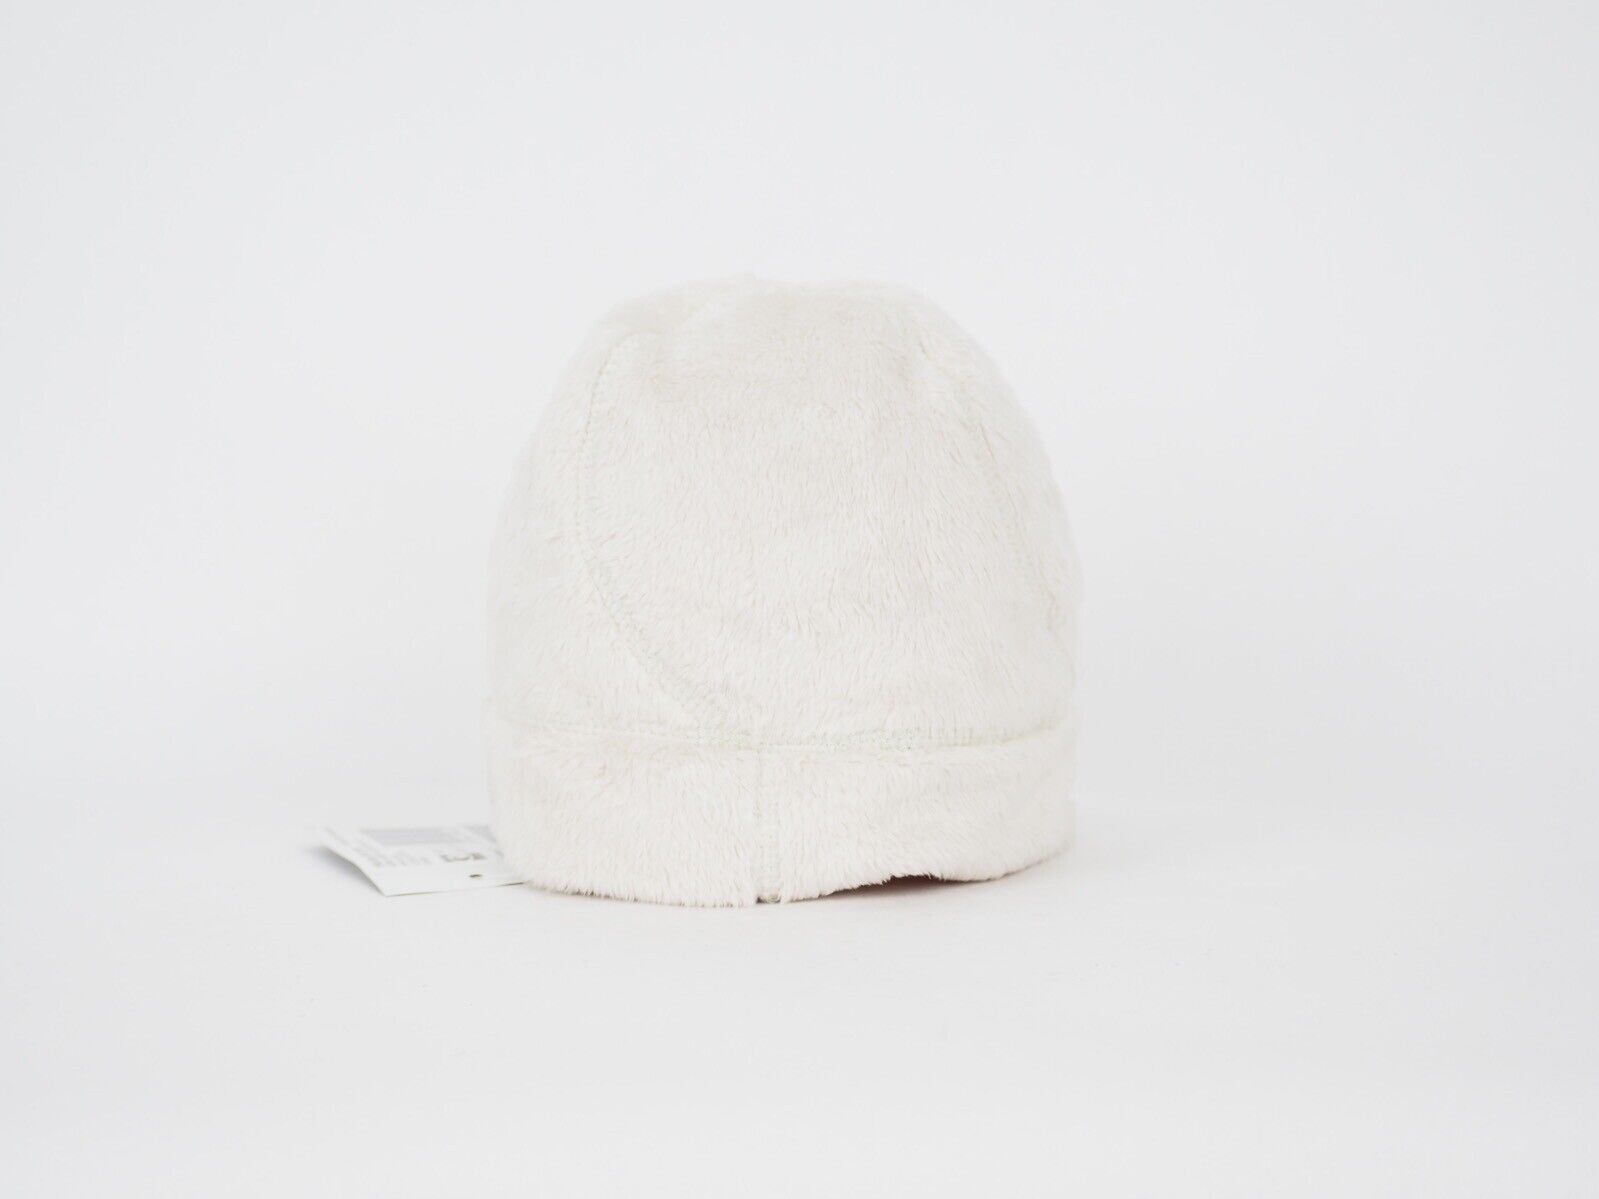 Girls Jack Wolfskin Soft Asylum Cap 1901881 White Sand Beanie Warm Winter Hat - London Top Style